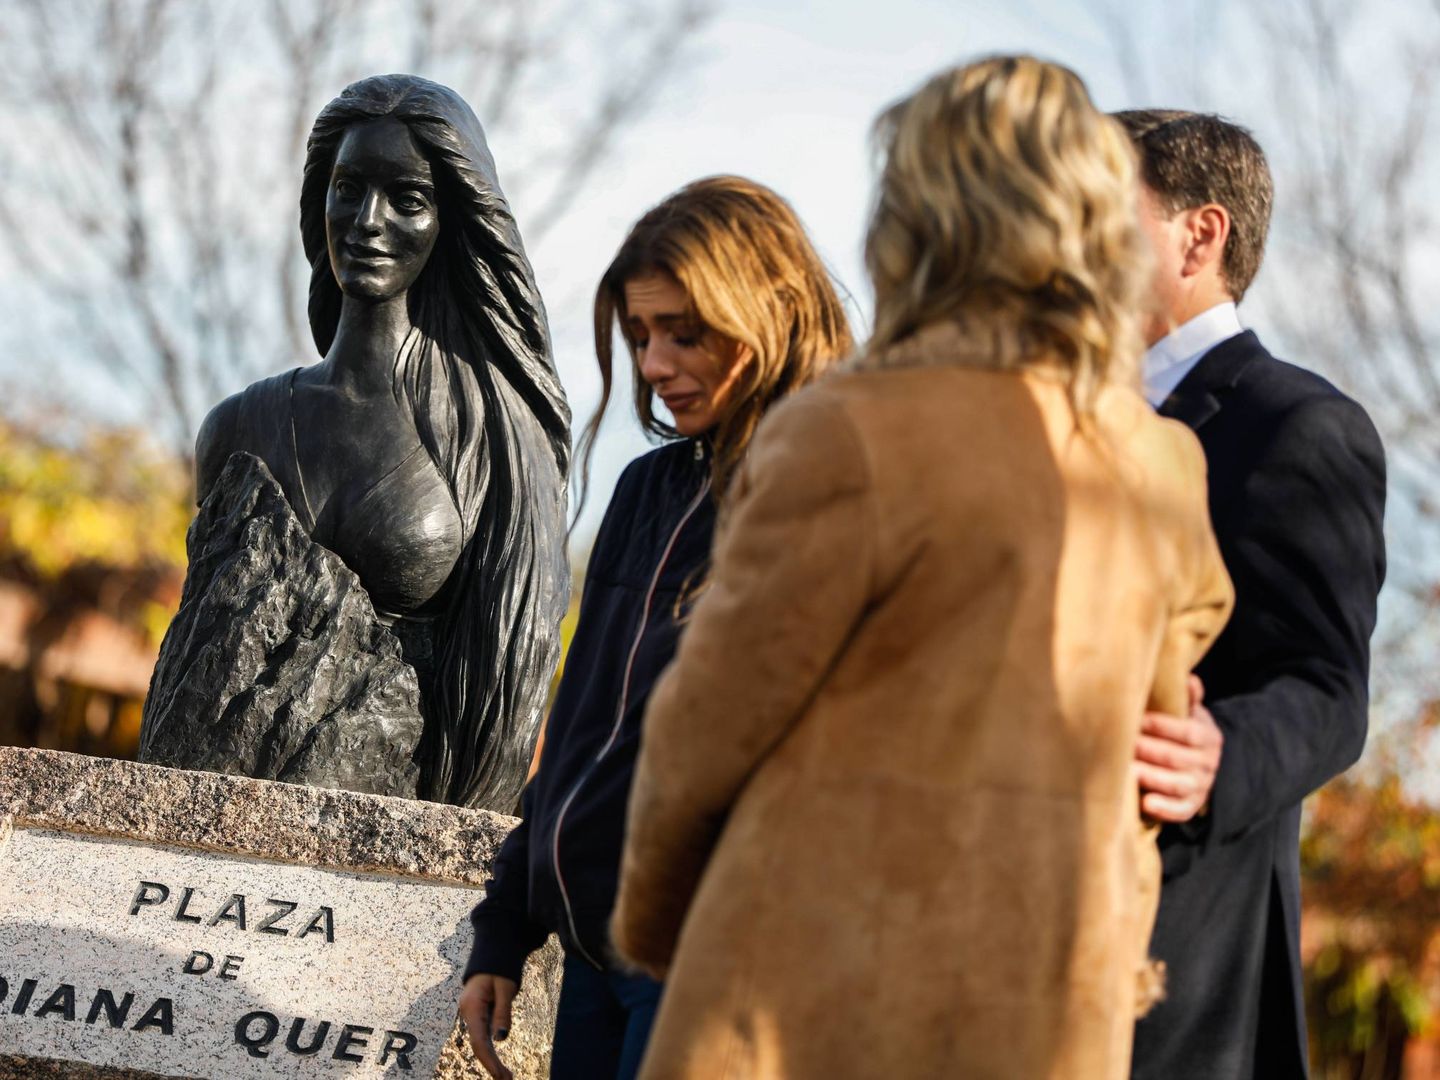 La hermana y los padres de Diana Quer junto a una estatua en su recuerdo. (Cordon Press)